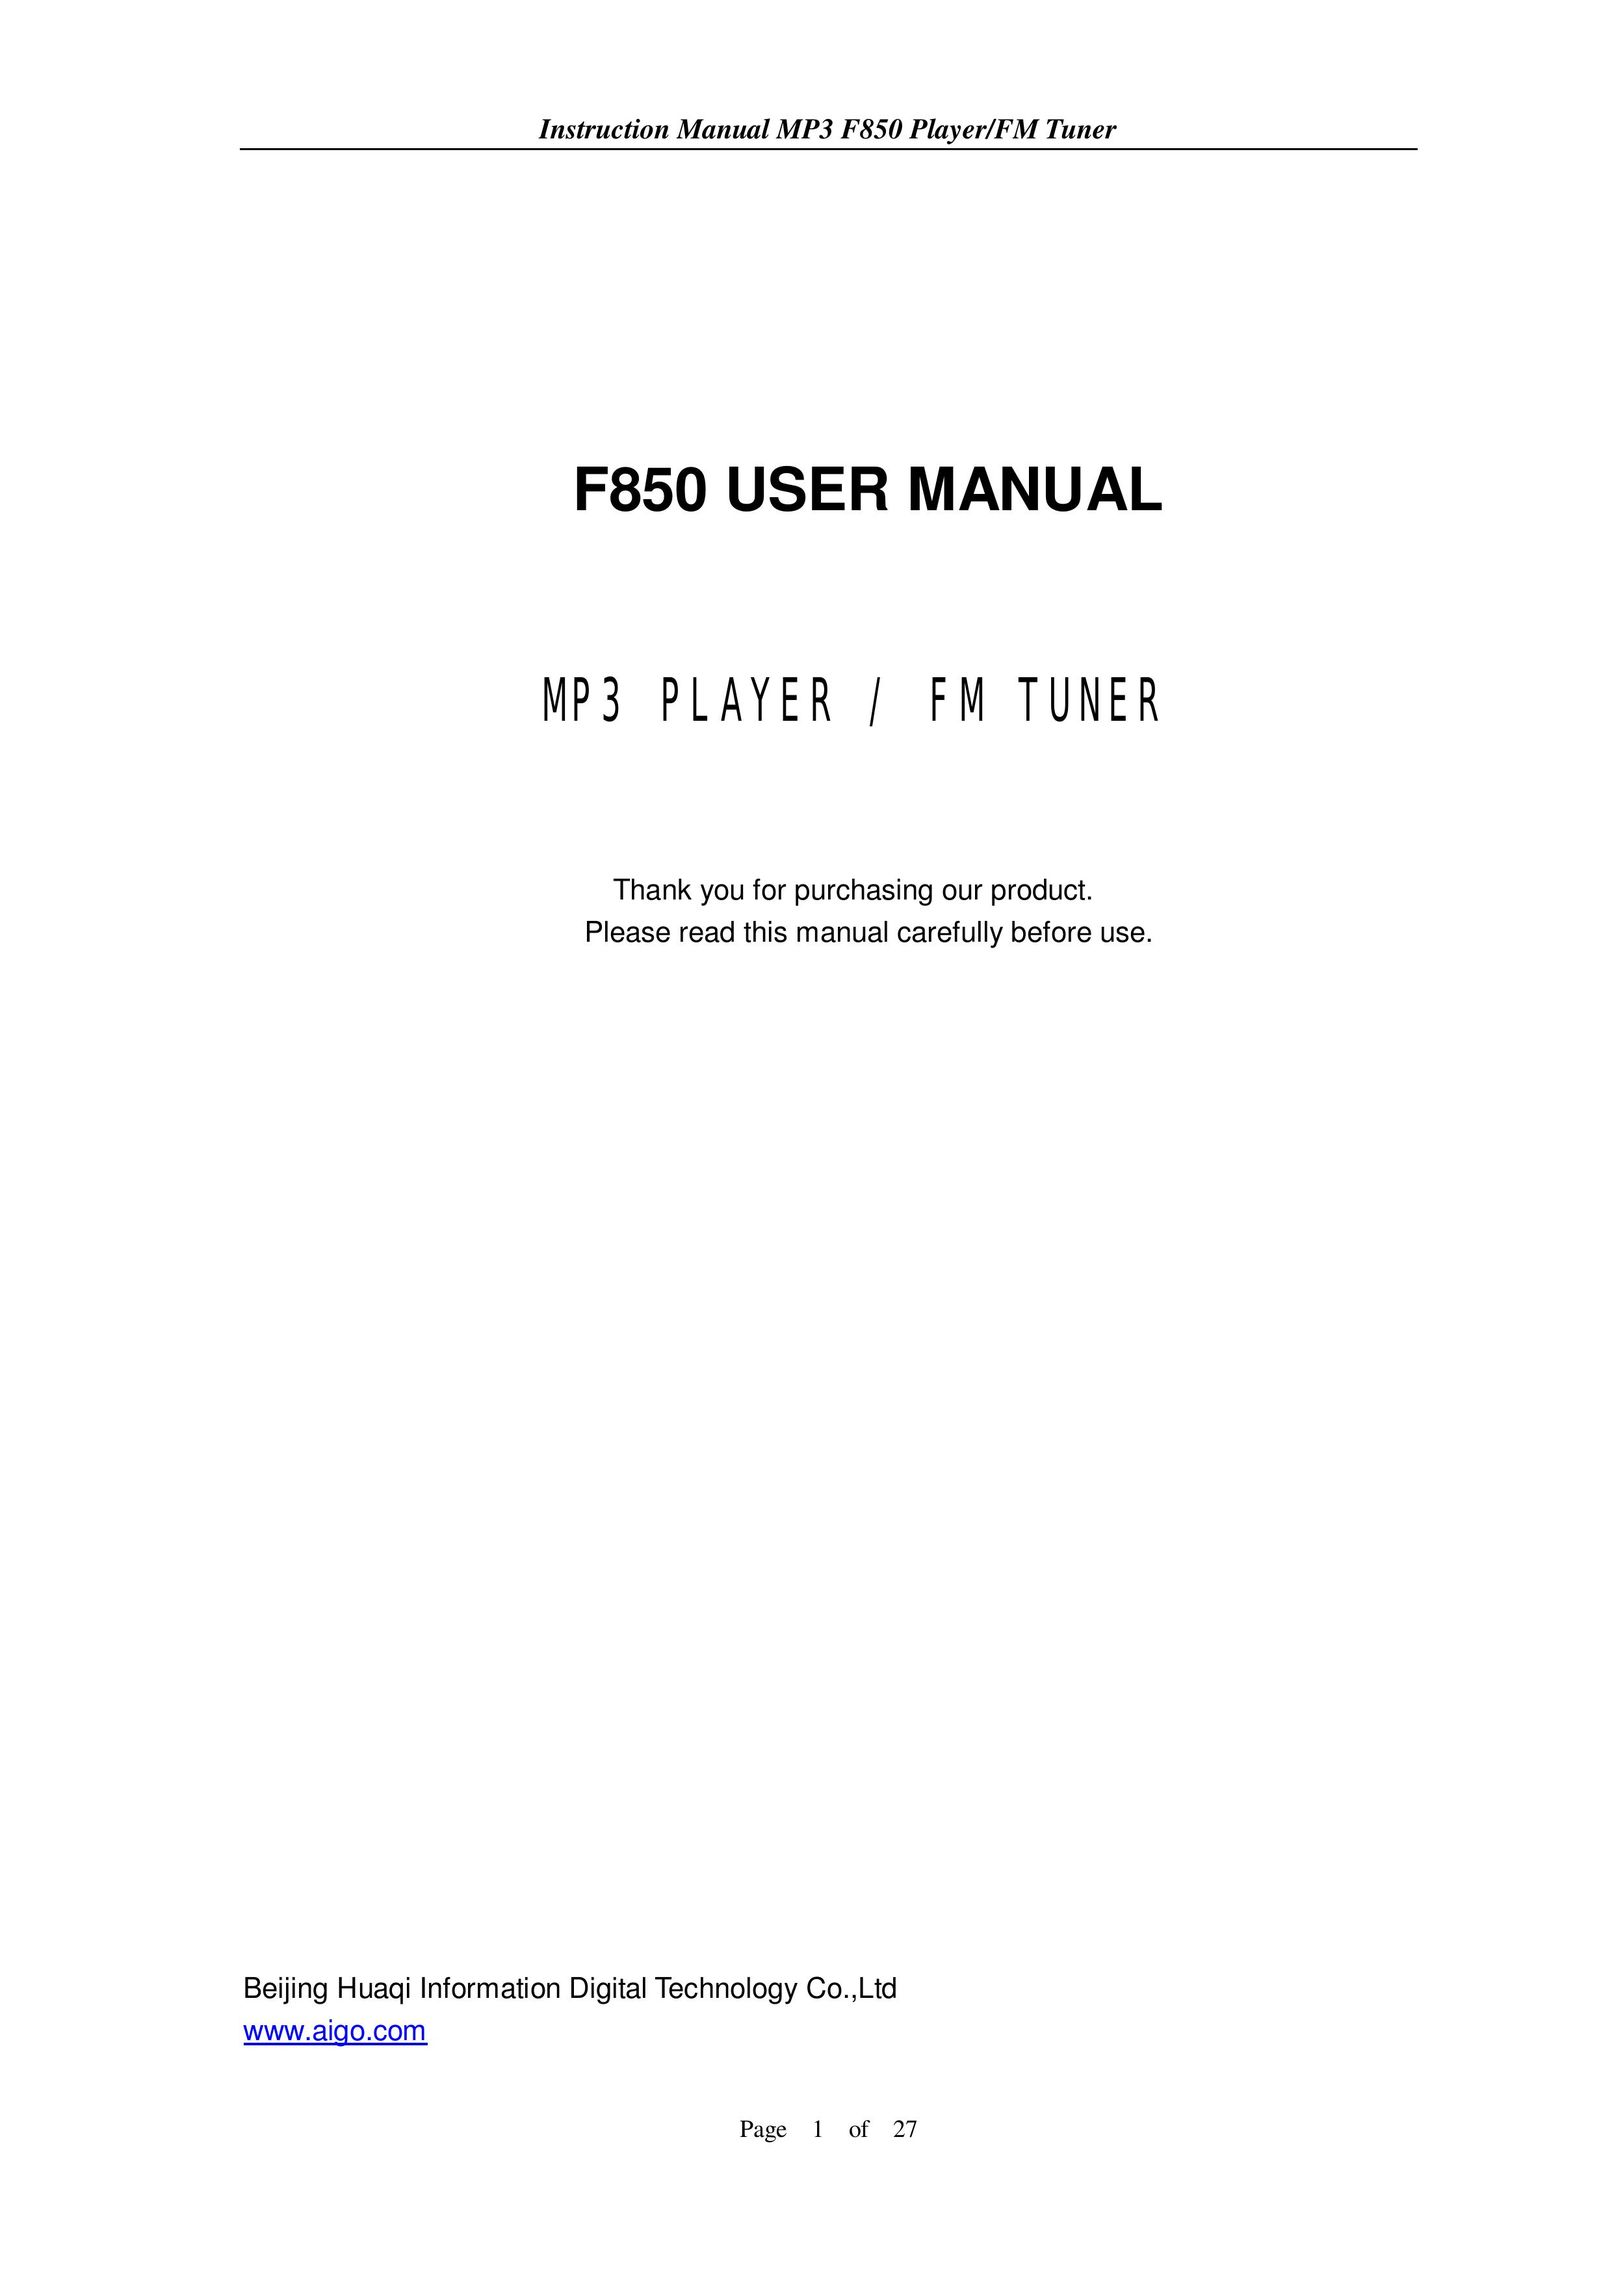 Aigo F850 MP3 Player User Manual